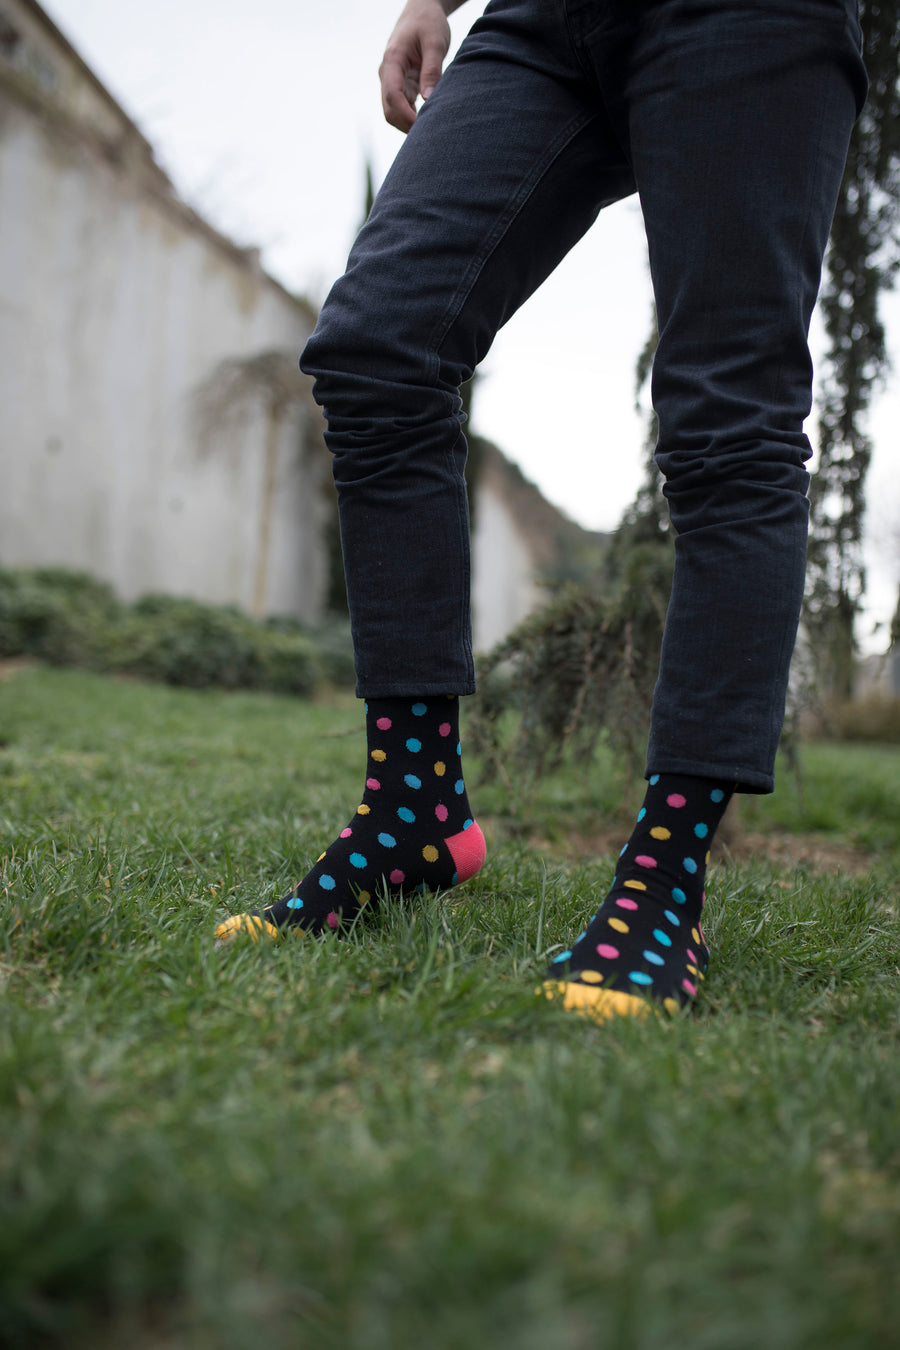 Men's Colorful Spots Socks